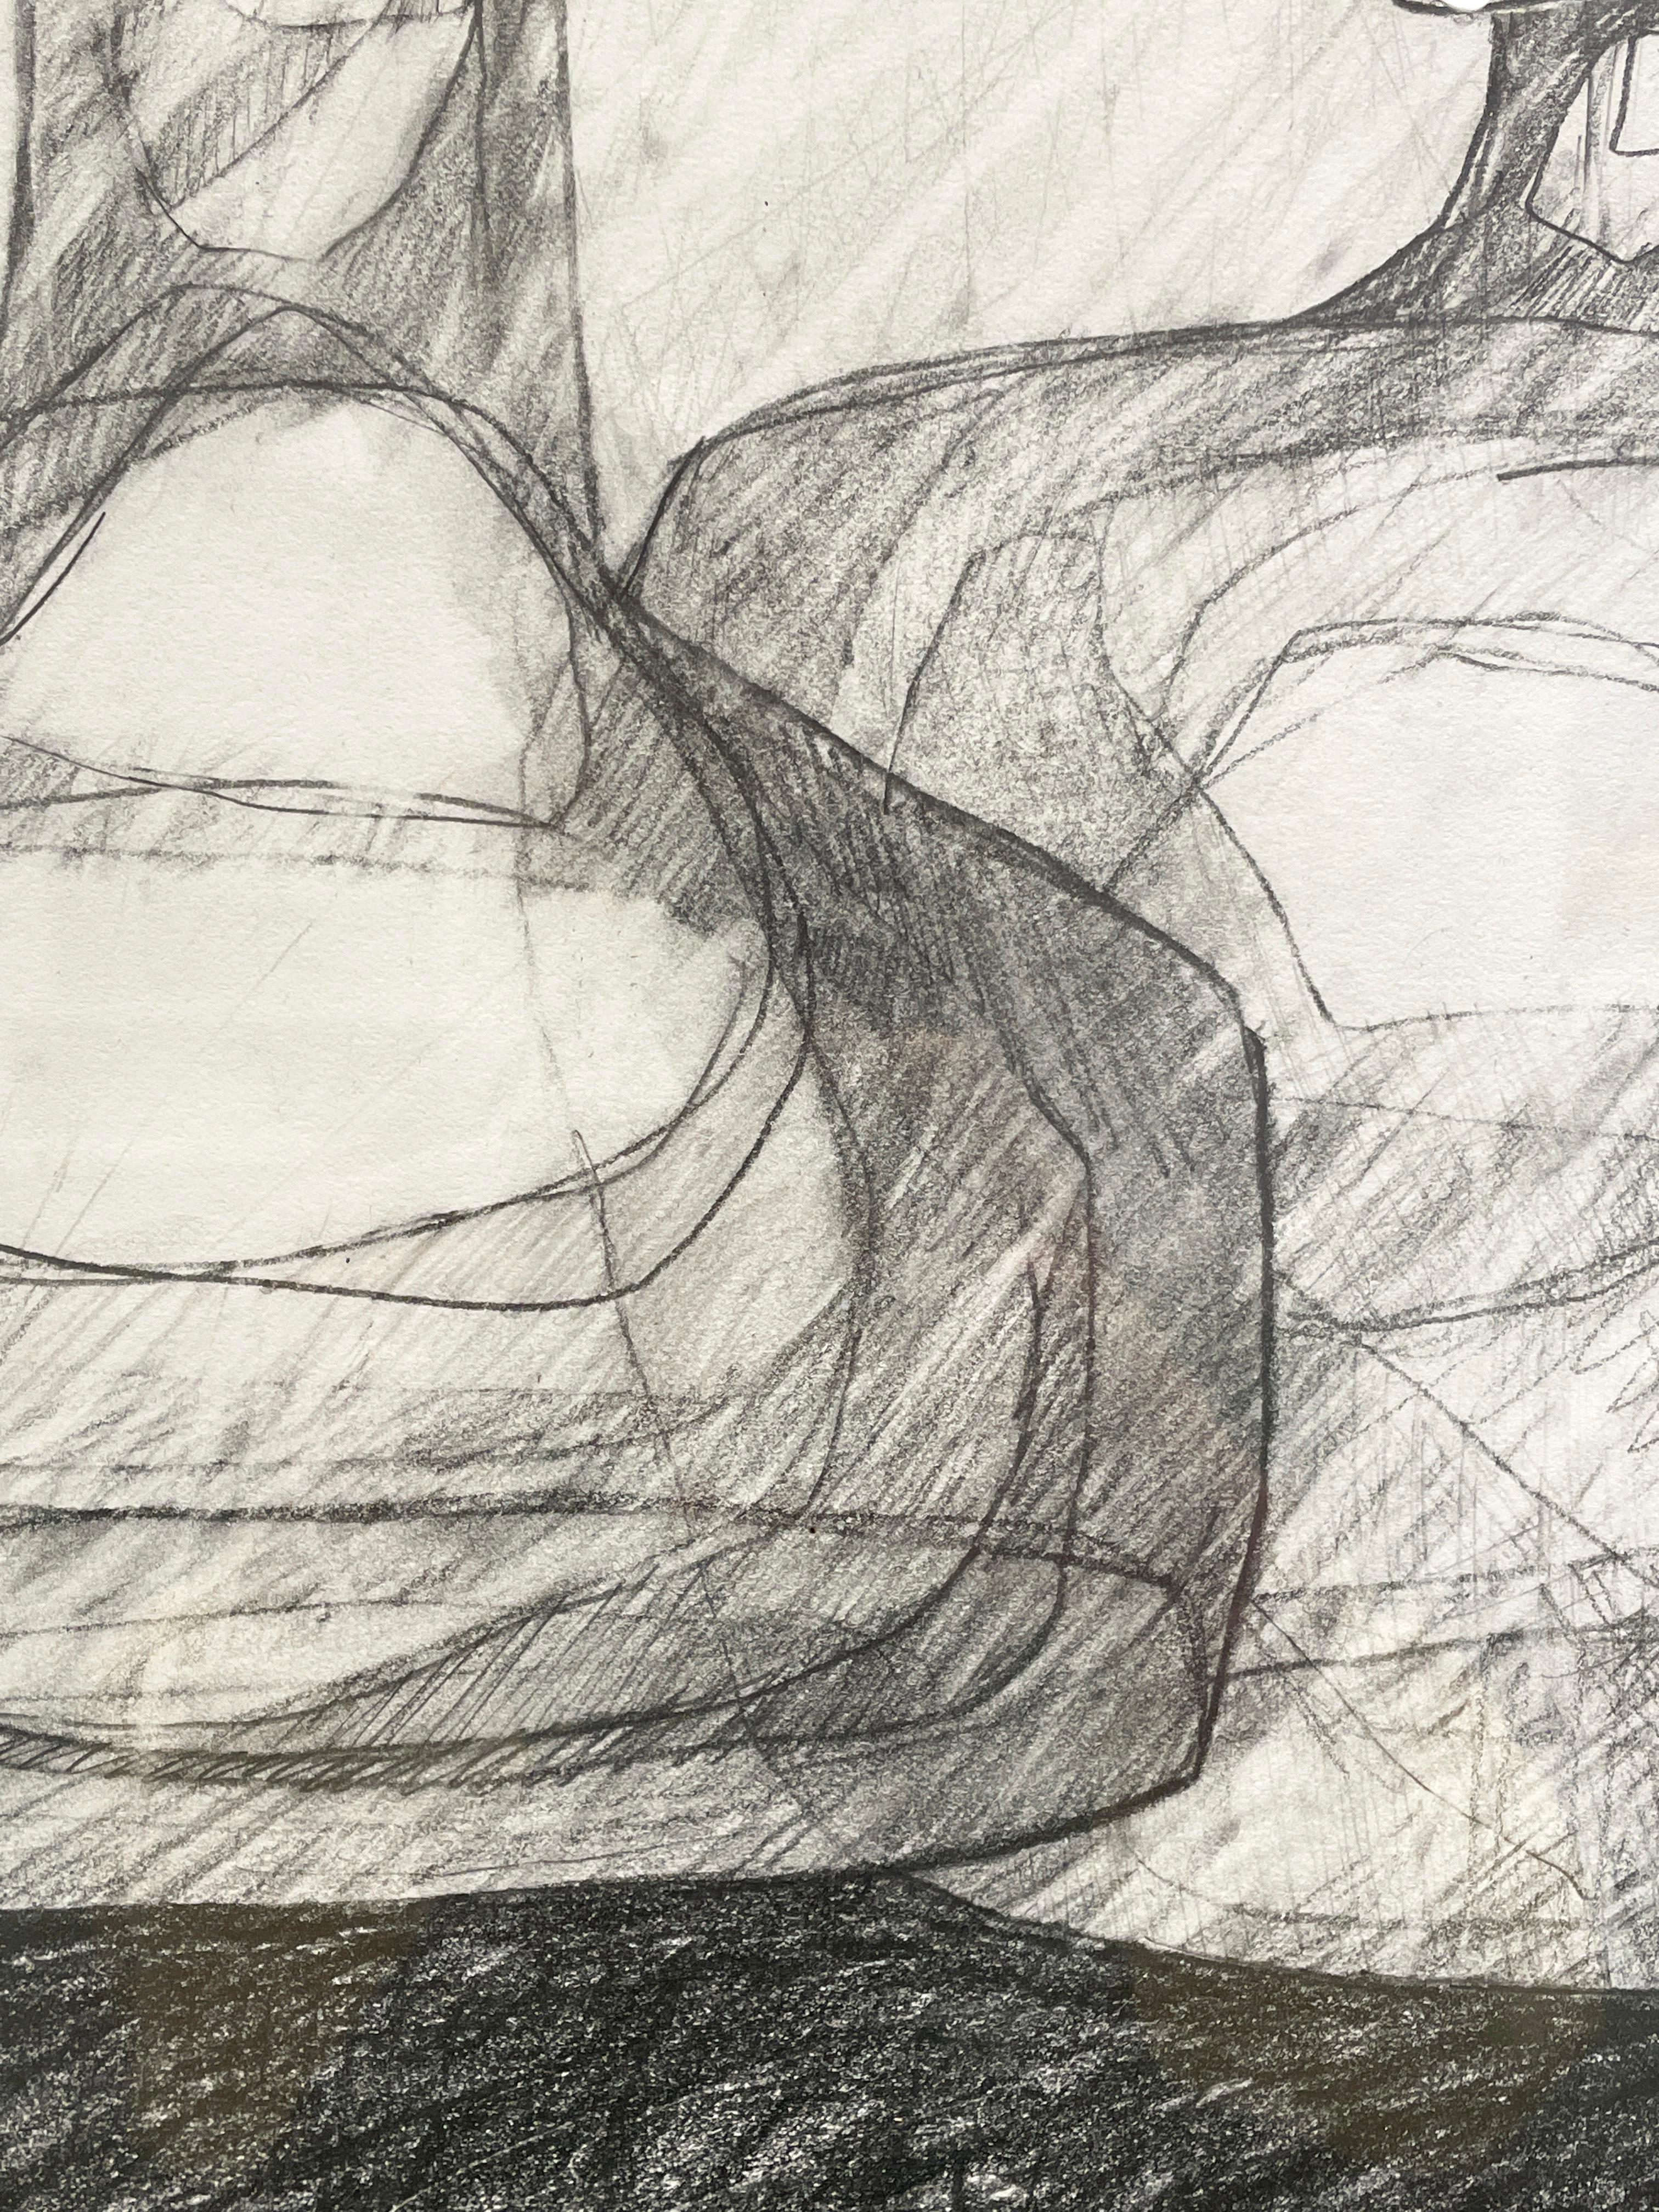 Abstrakte Schwarz-Weiß-Stilllebenzeichnung von Flaschen auf einer Fläche von David Dew Bruner
Graphit auf Papier
19,5 x 38,5 x 1,75 Zoll
Gerahmt im Vintage-Rahmen, hängt bündig an der Wand

Die Serie 